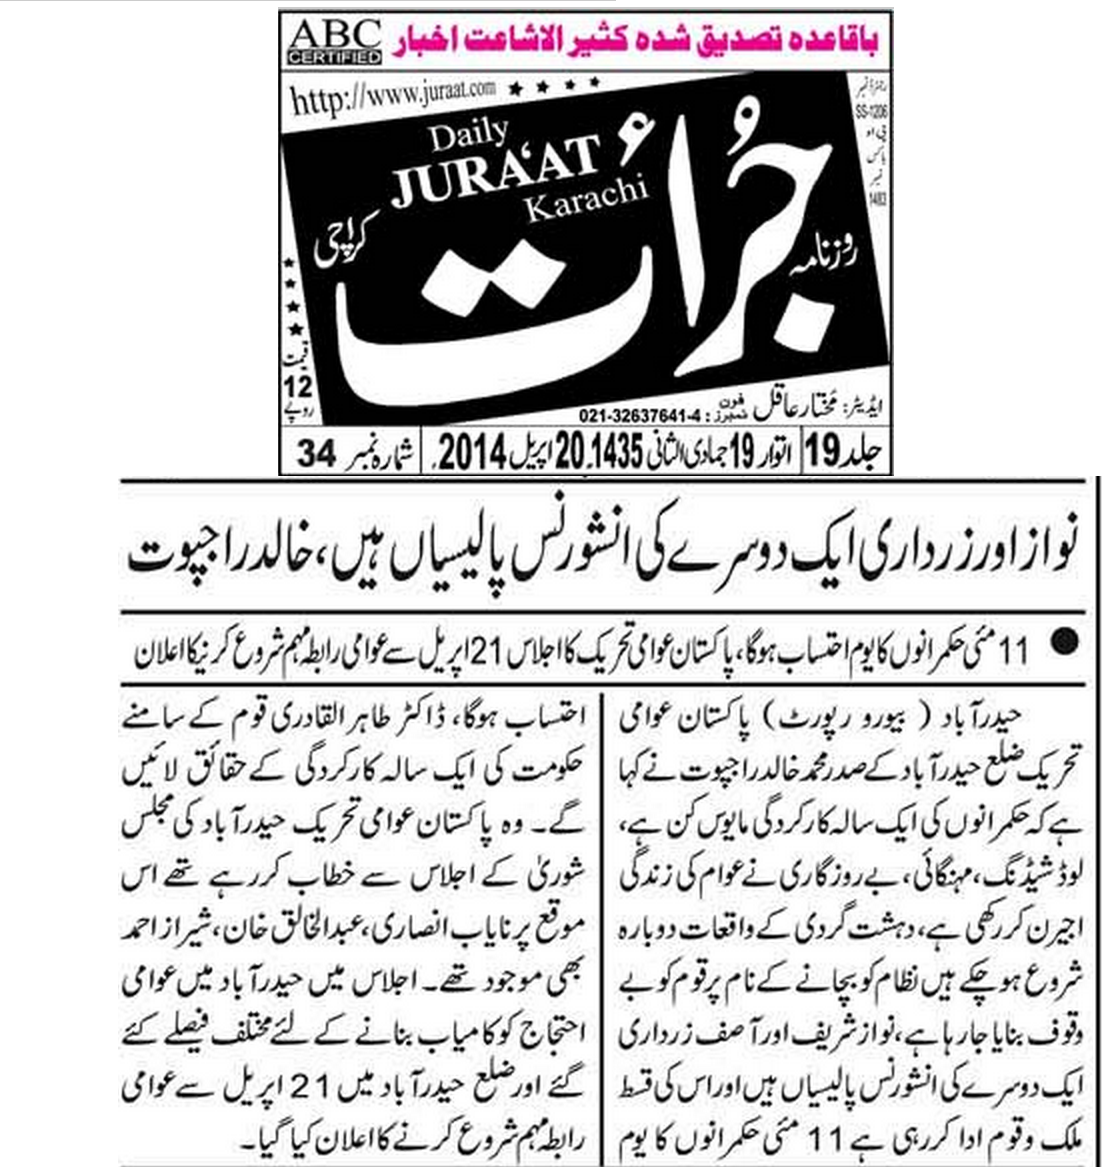 Minhaj-ul-Quran  Print Media Coveragedaily juraat news